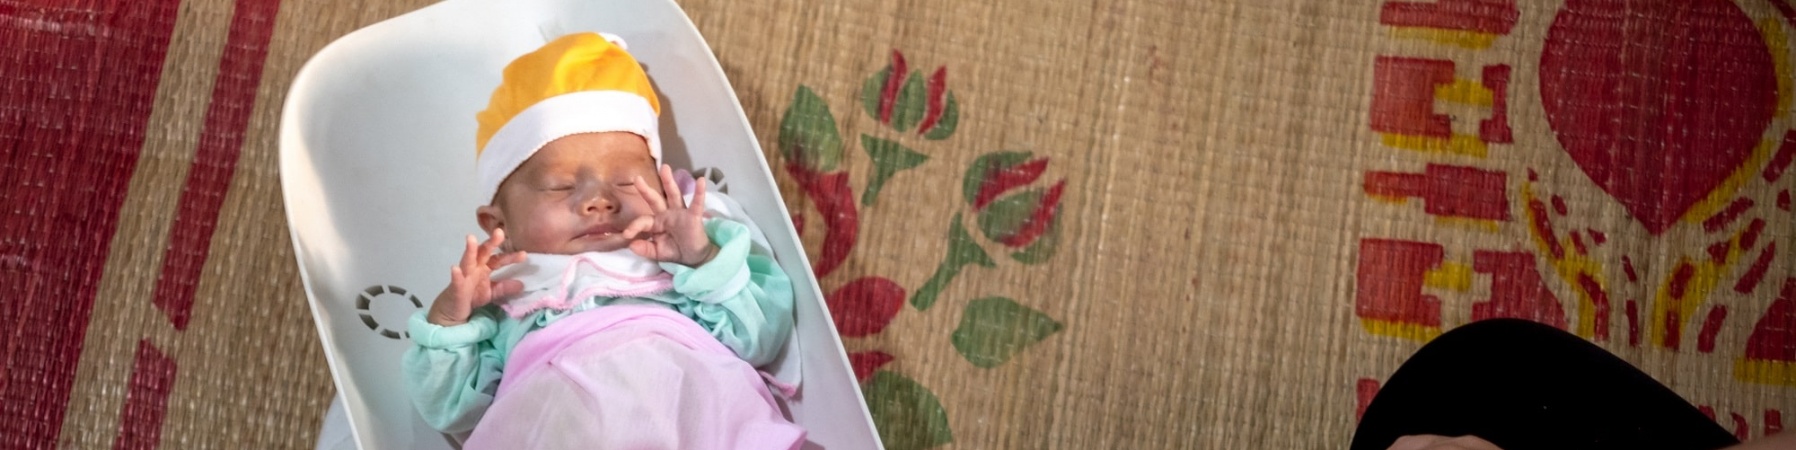 neonato in una vaschetta di plastica per pesarlo, vestito con vestitini caldi e colorati